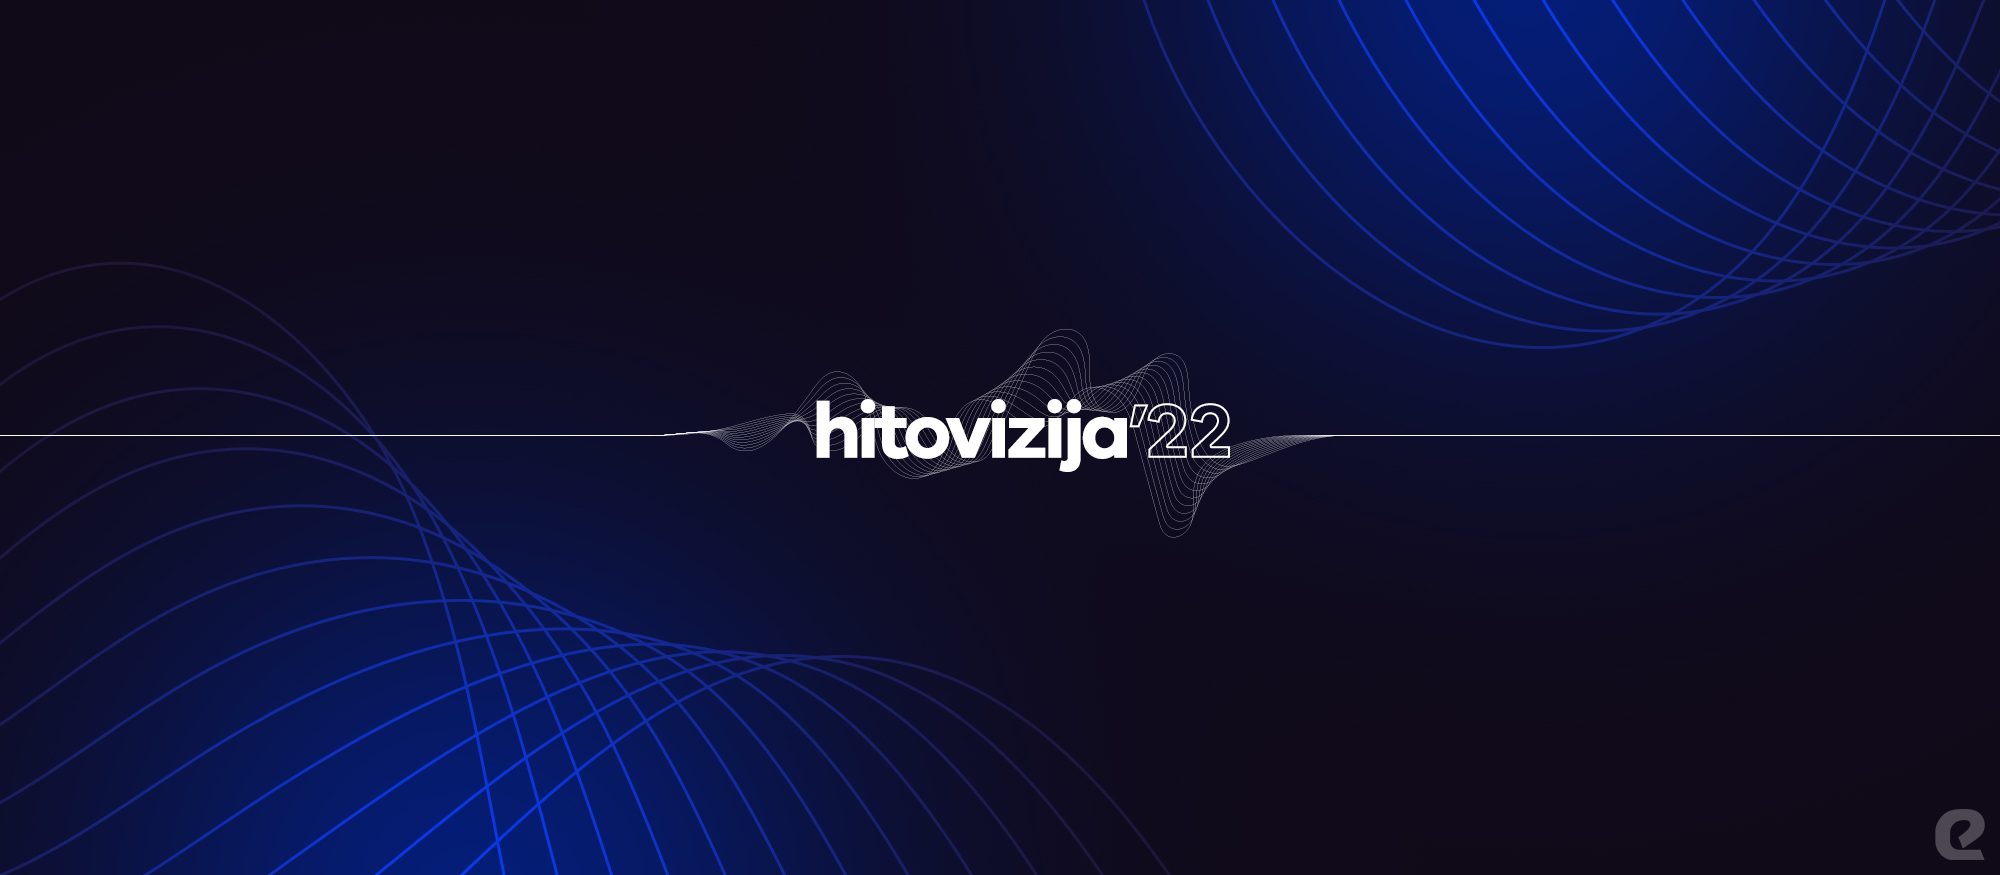 Logo projekta Hitovizija u kojem se prisjećamo hitova nacionalnih izbora eurovizijske sezone 2022.